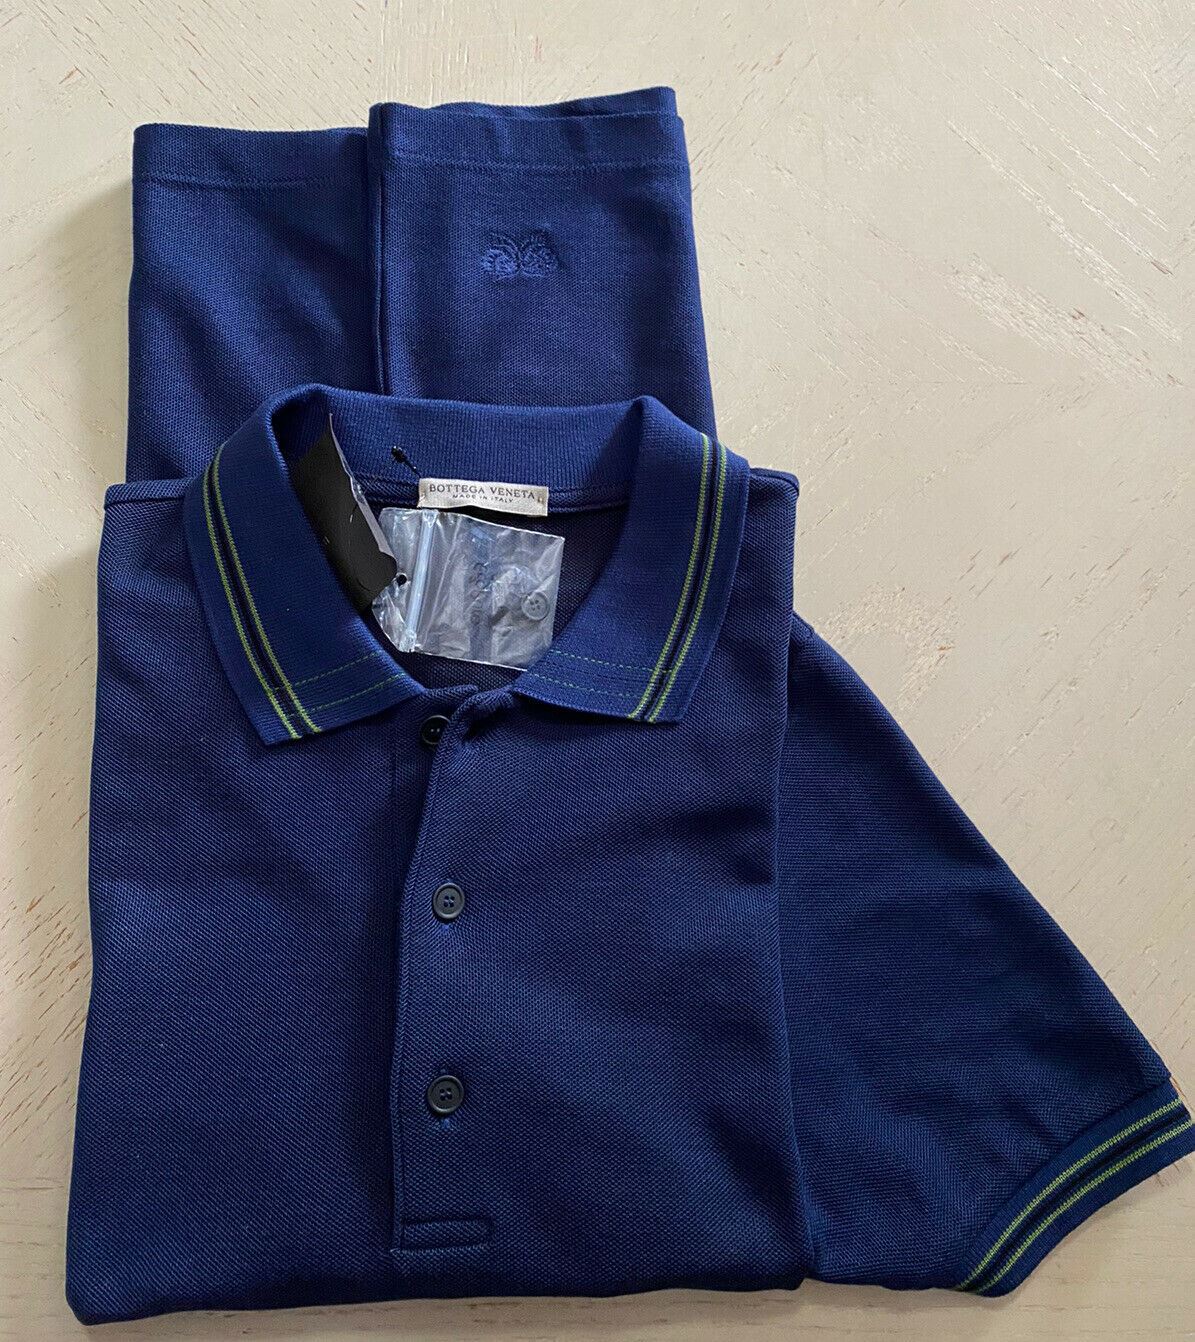 Neu mit Etikett: 390 $ Bottega Veneta Herren-Poloshirt Blau XS US (44 Eu) Italien